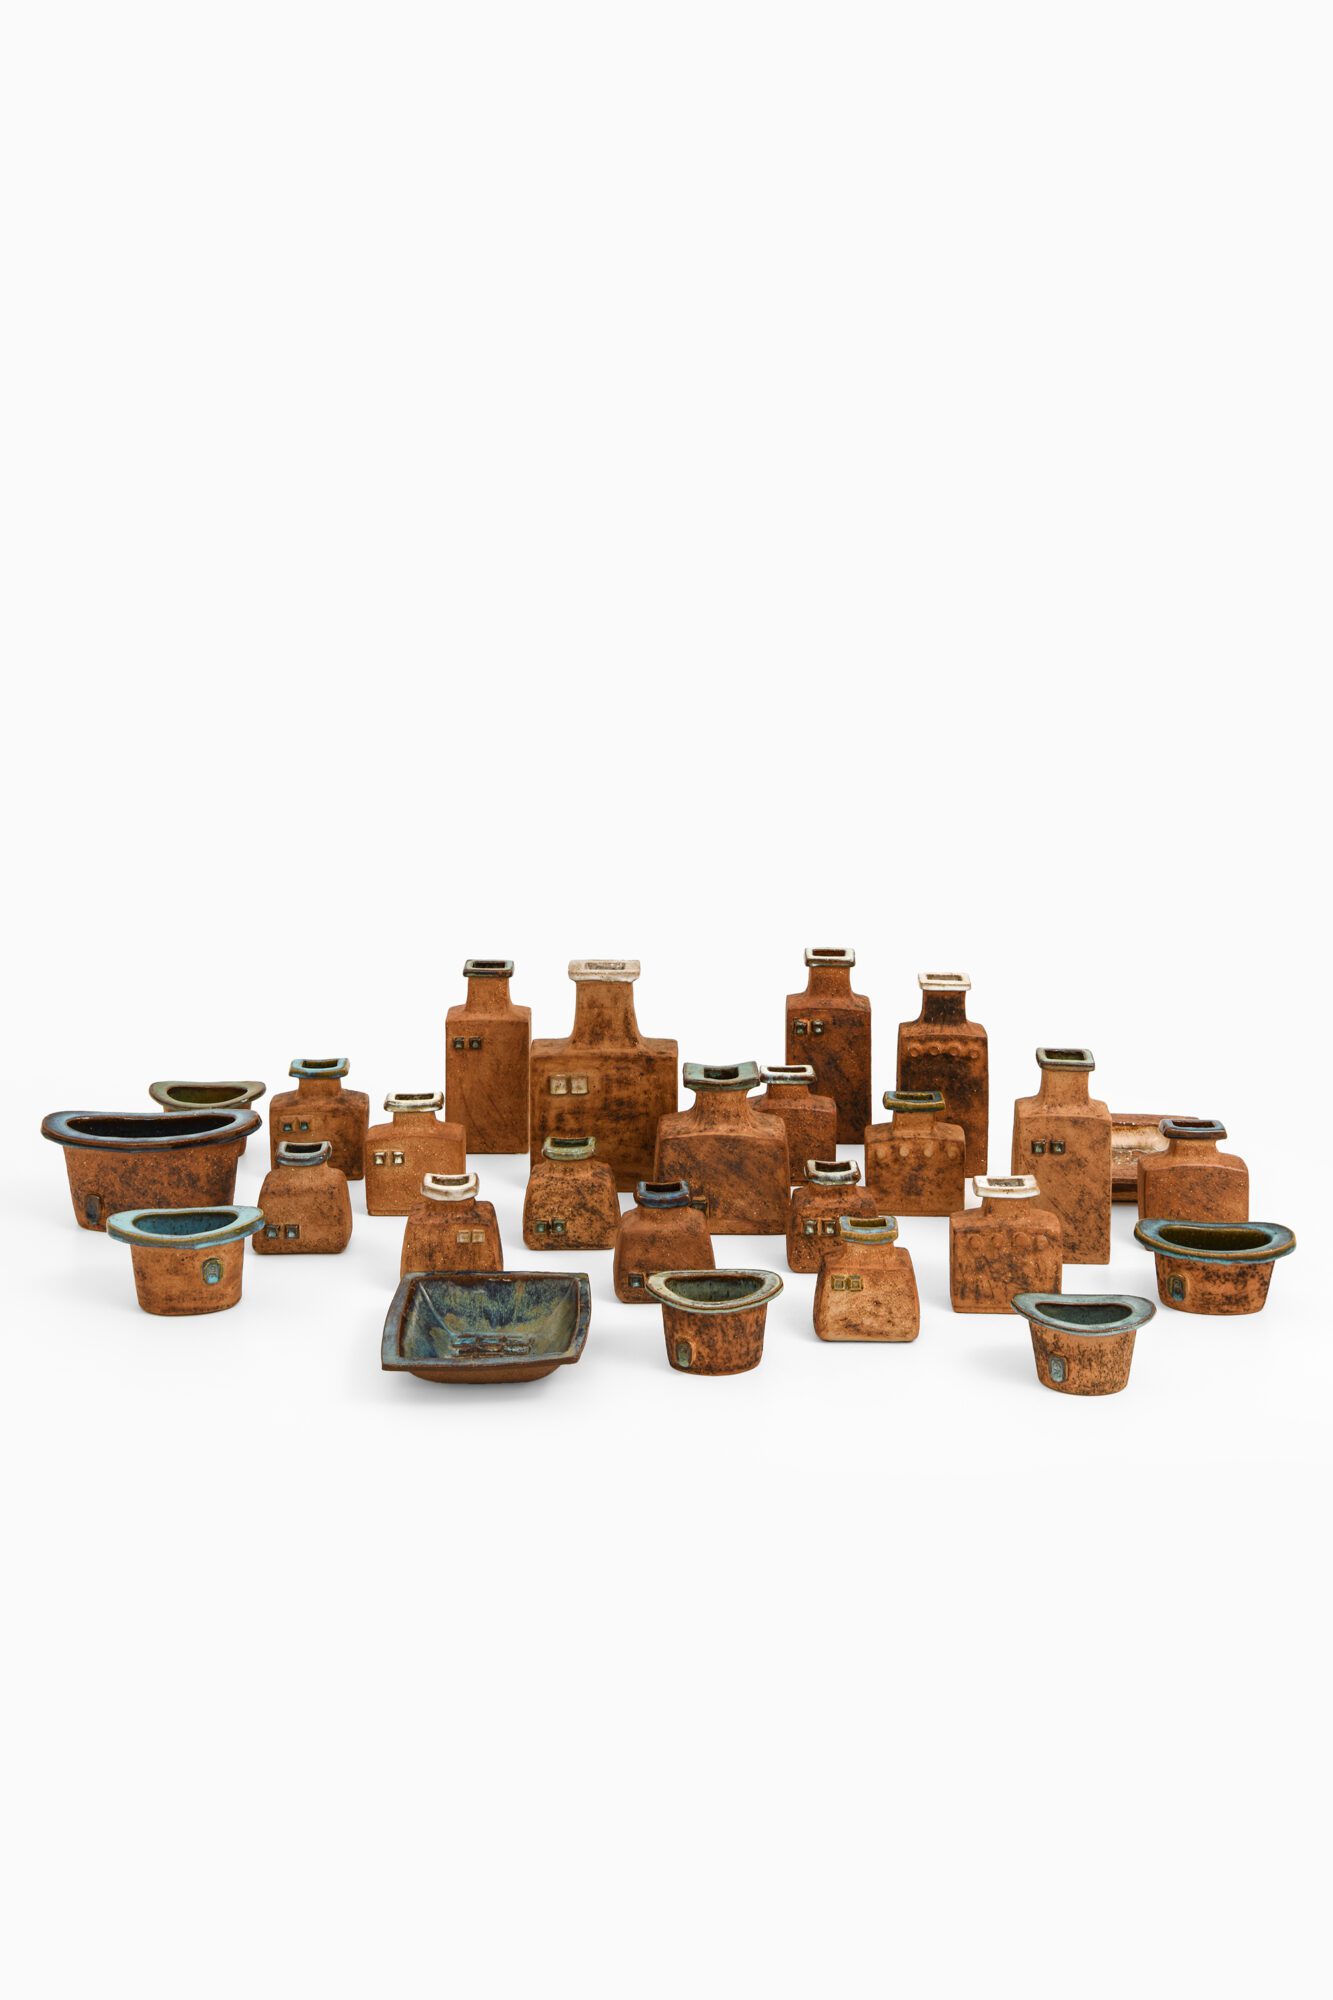 Curt-Magnus Addin ceramic vases at Studio Schalling